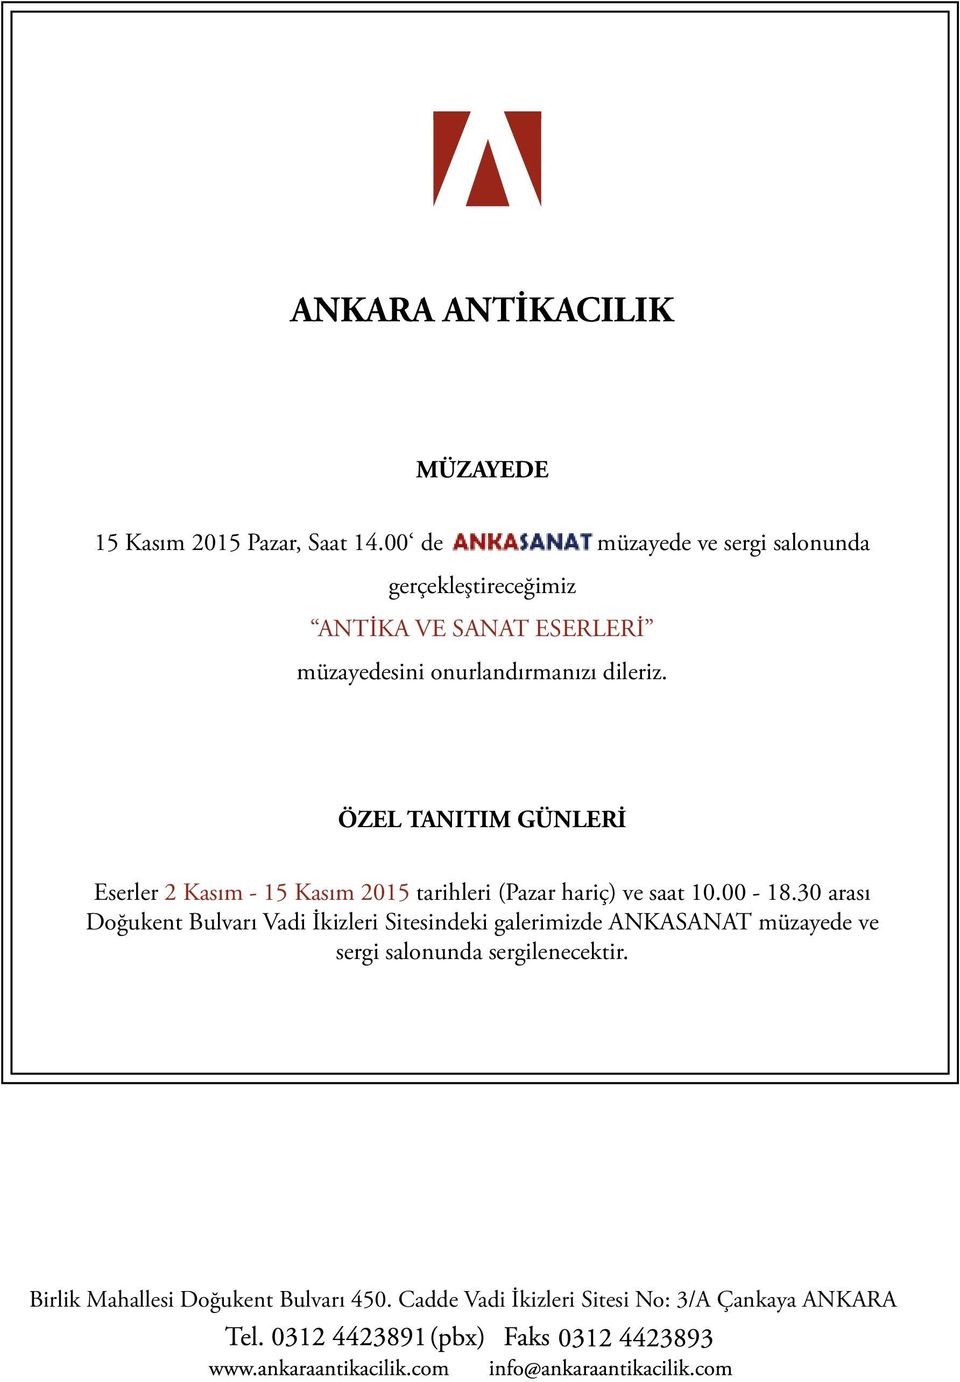 ÖZEL TANITIM GÜNLERİ Eserler 2 Kasım - 15 Kasım 2015 tarihleri (Pazar hariç) ve saat 10.00-18.